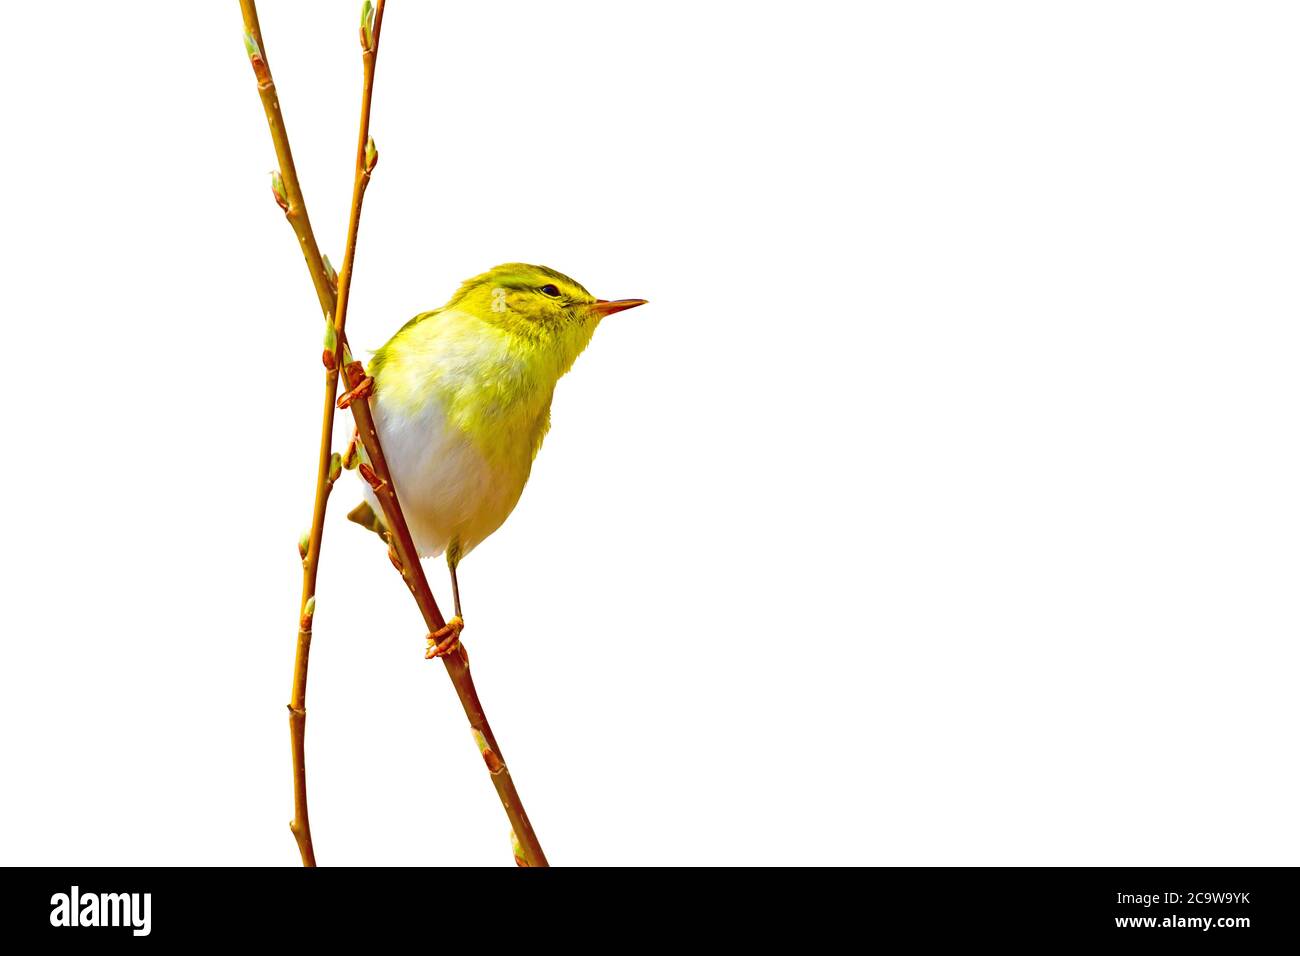 Niedlicher kleiner gelber Vogel. Isolierter Vogel. Weißer Hintergrund. Vogel:  Waldsänger. Phylloscopus sibilatrix Stockfotografie - Alamy